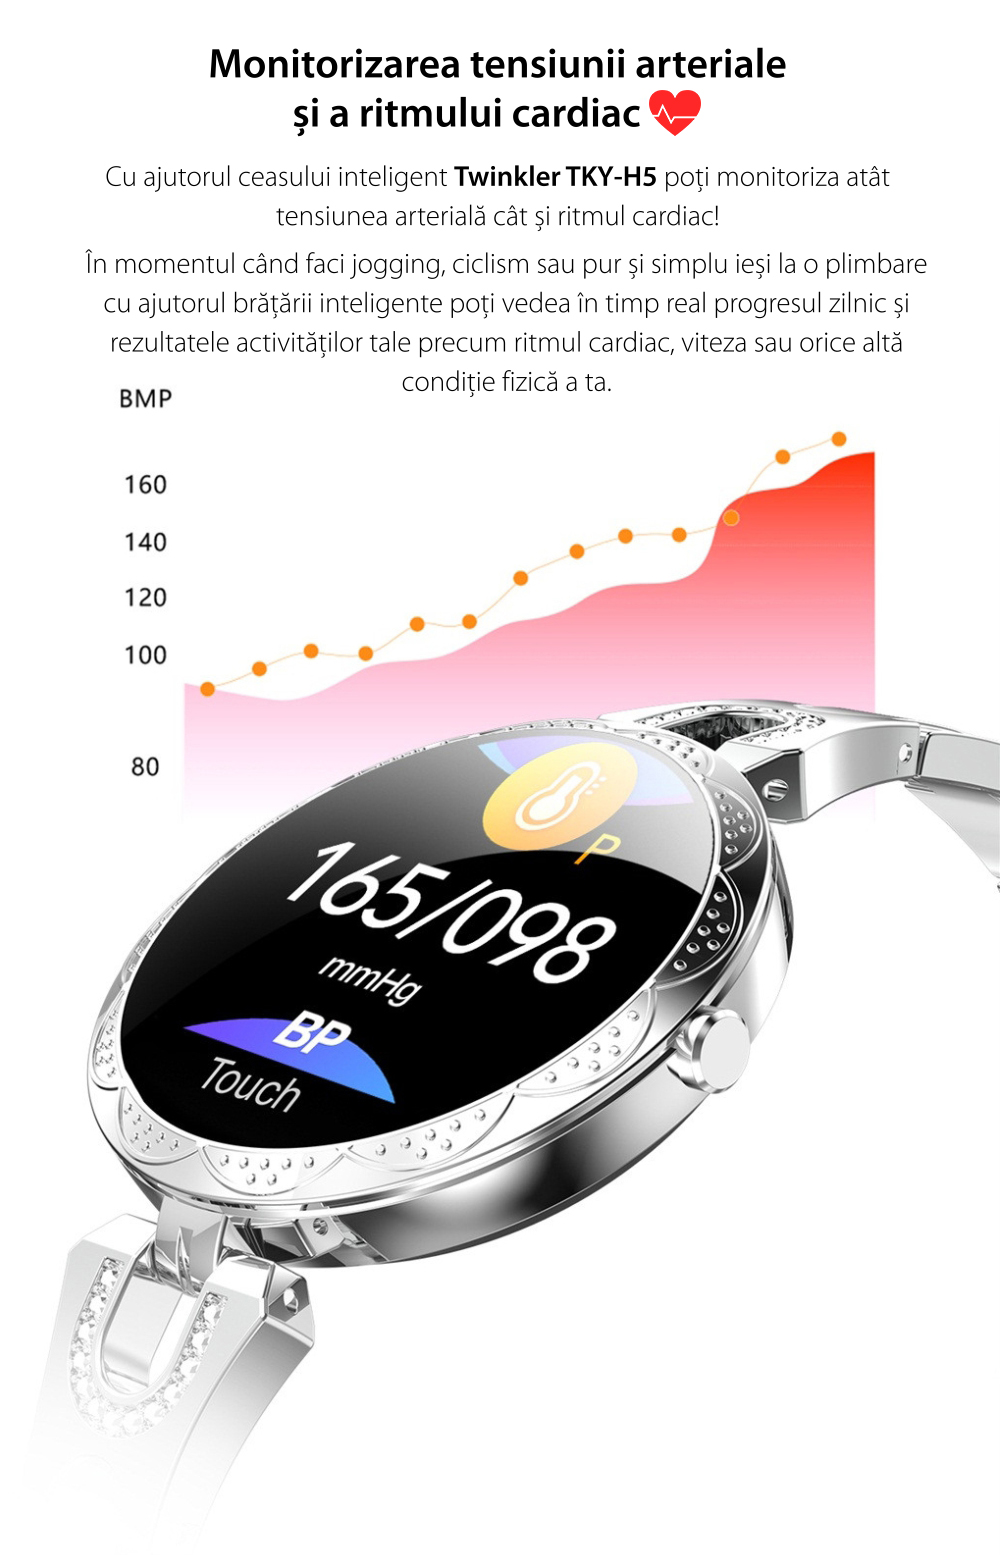 Ceas Smartwatch fashion Twinkler TKY-H5 cu functie de monitorizare ritm cardiac, Tensiune arteriala, Calitate somn, Notificari, Pedometru, Distanta parcursa, Incarcare magnetica, Argintiu